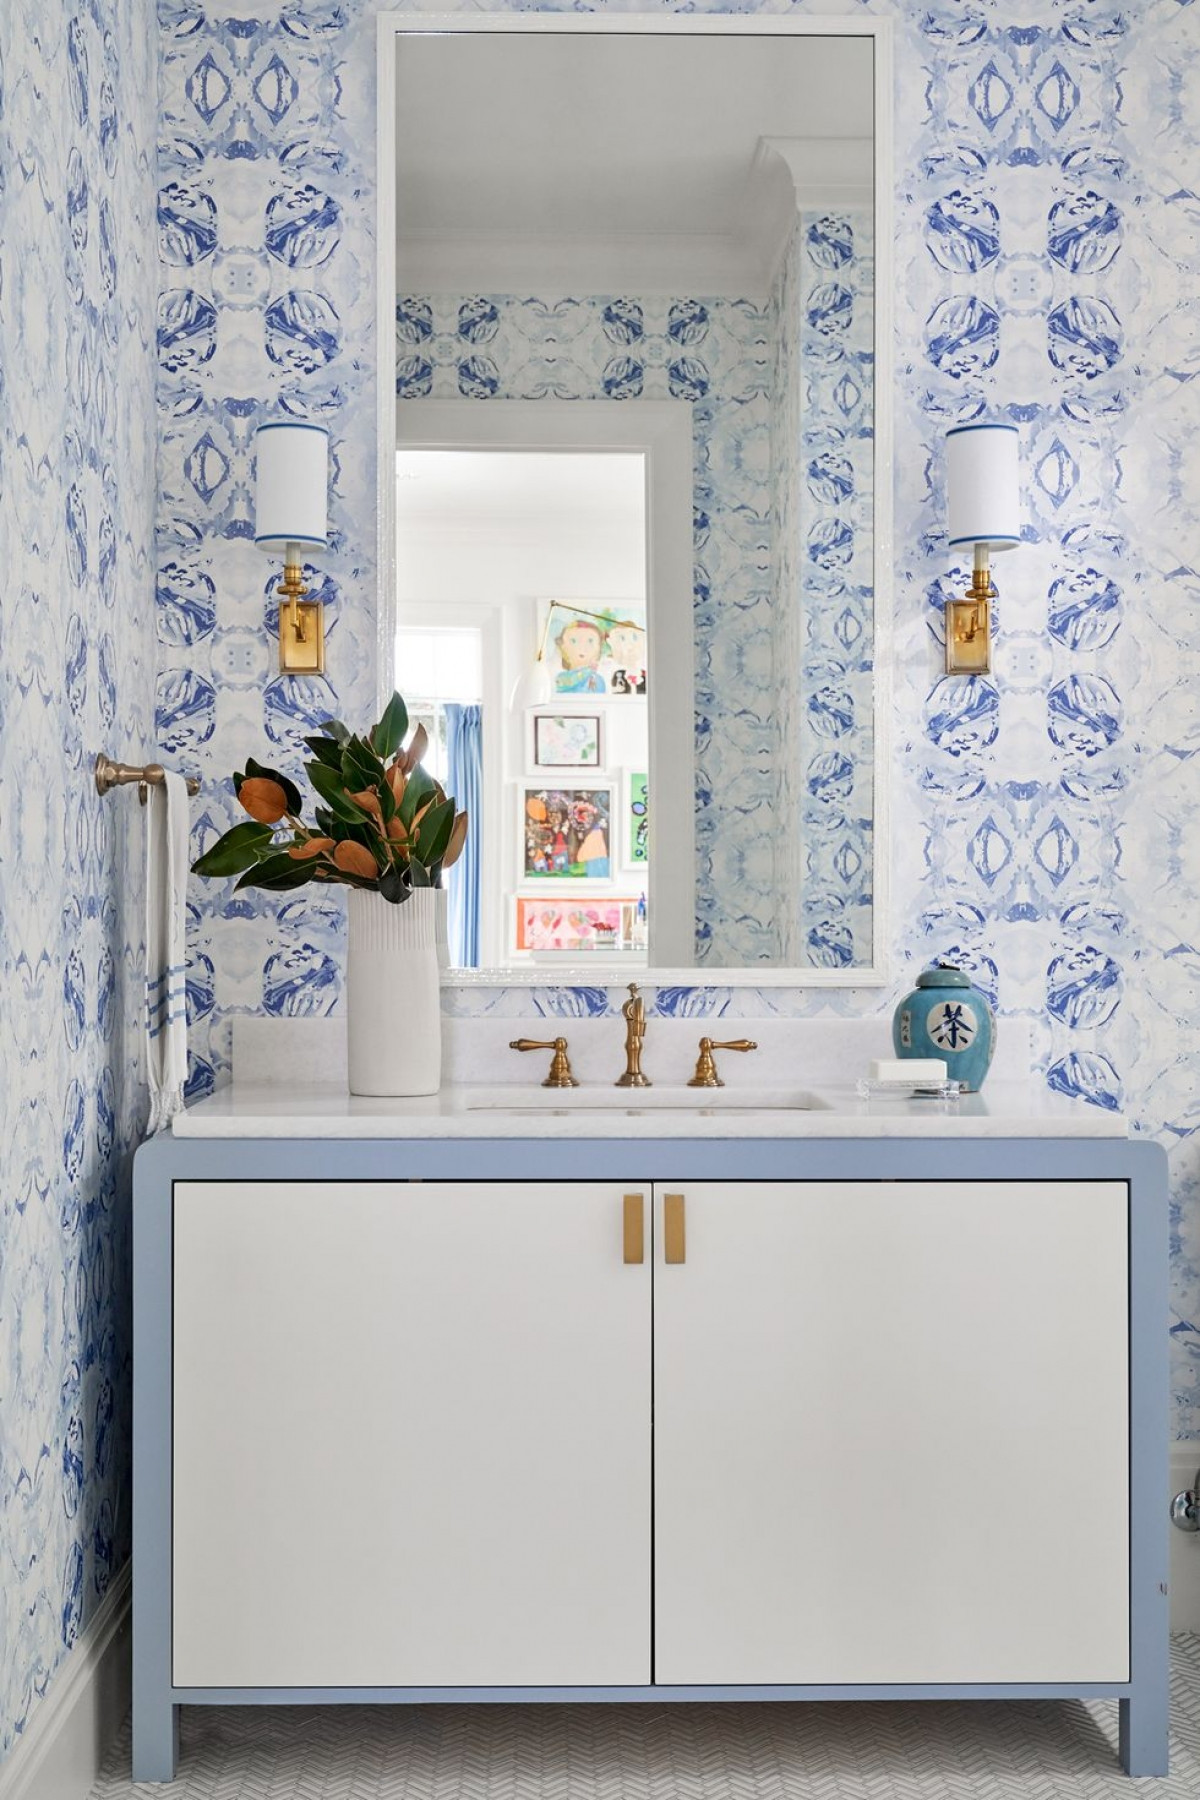  Giấy dán tường màu trắng pha xanh lam với những mảng màu độc đáo tạo ra một hiệu ứng đầy phong cách.